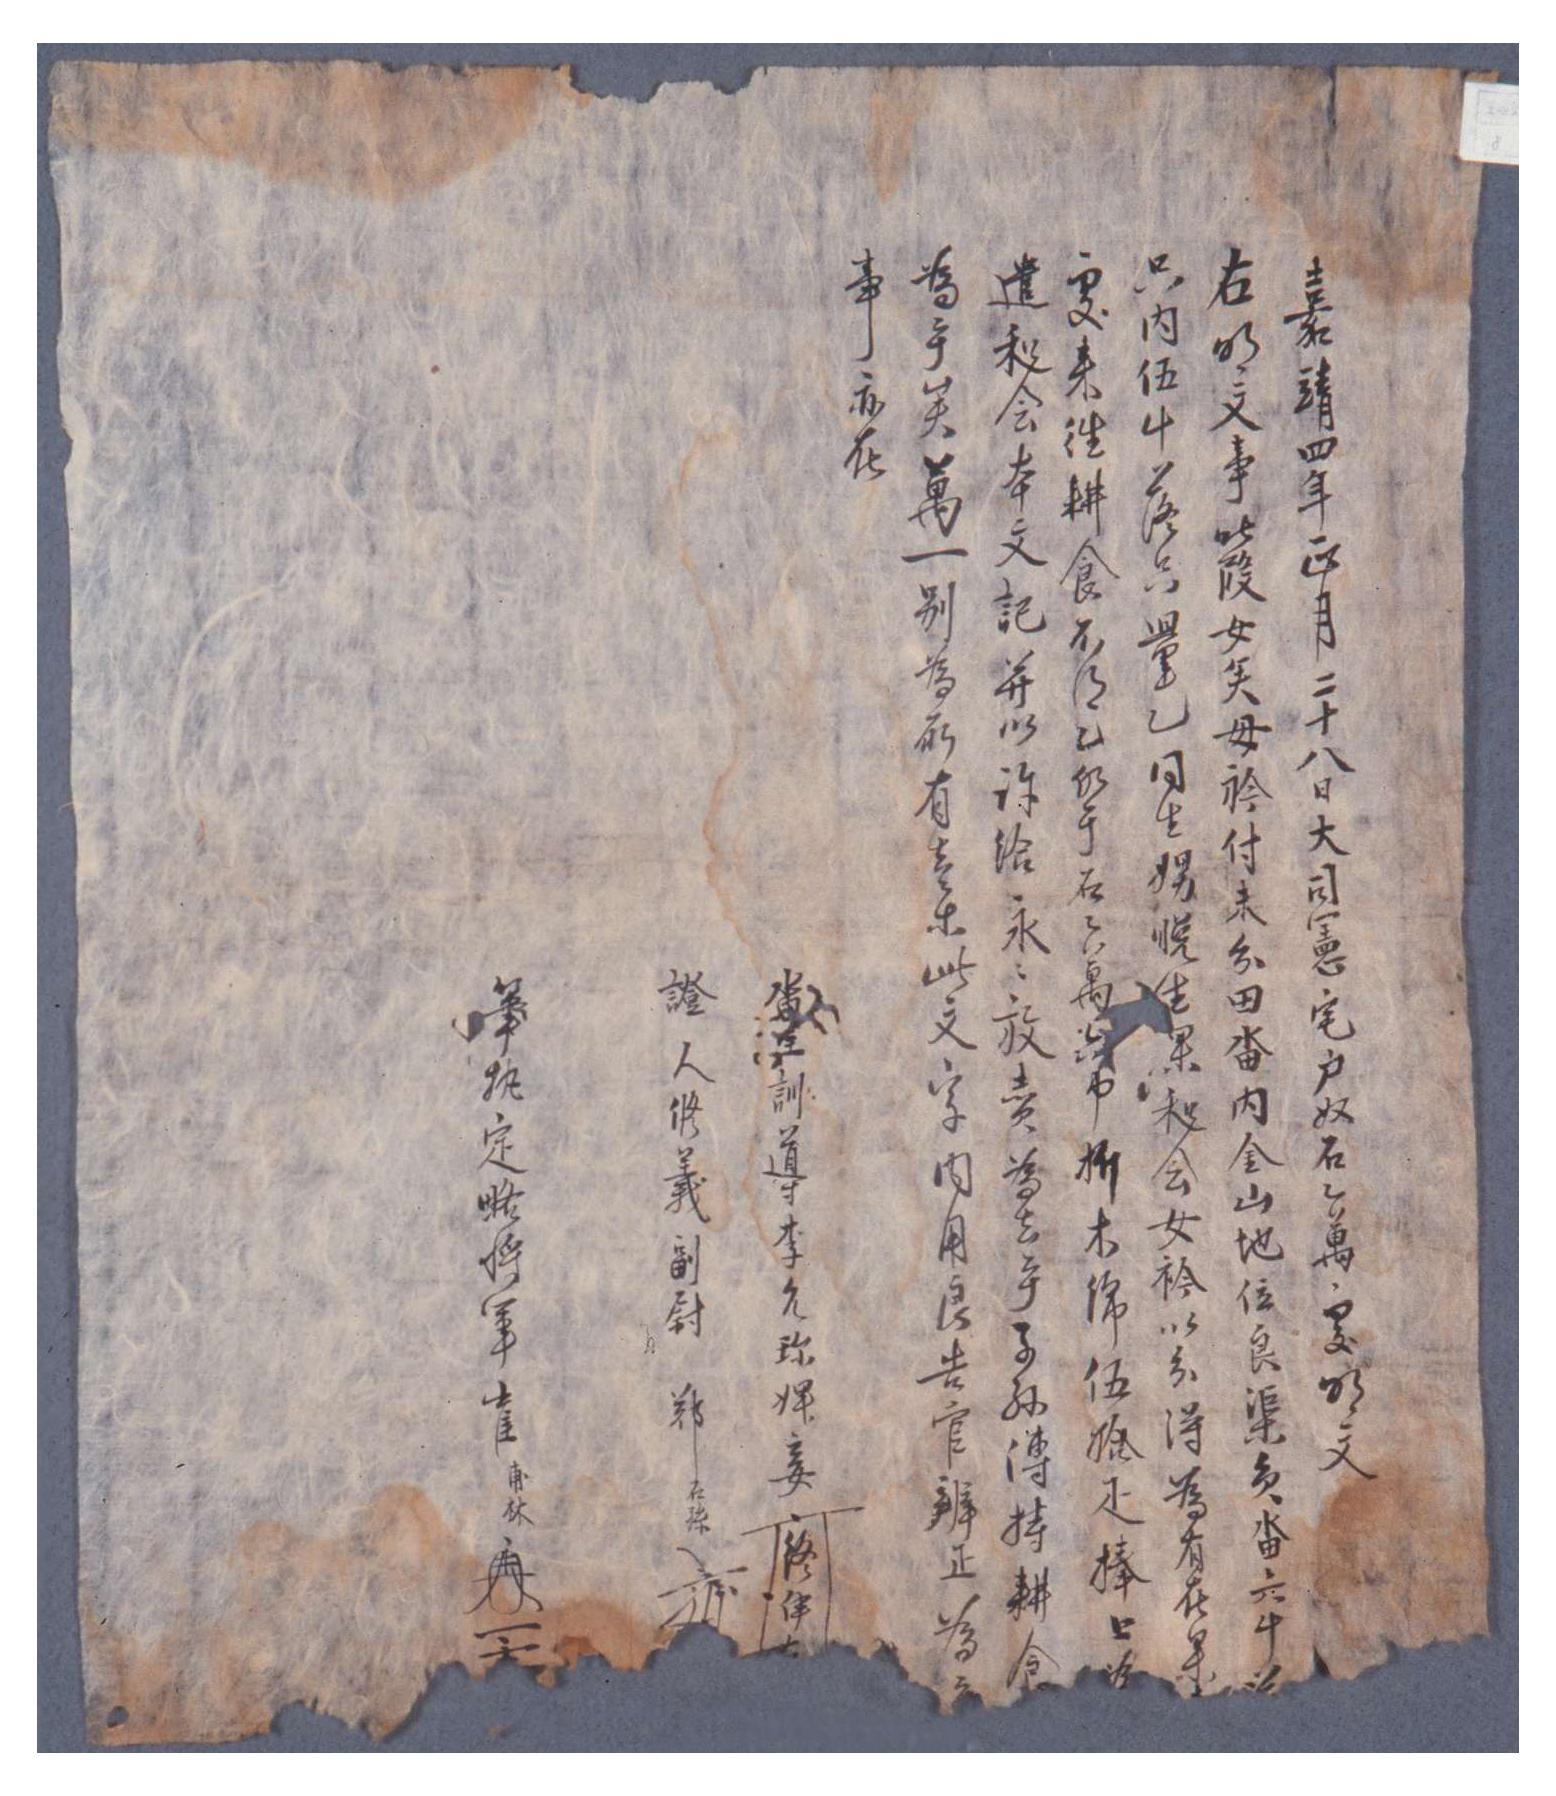 1552년 사노 권석수와 사비 흔이가 임하댁에 텃밭과 집을 매매한 문서